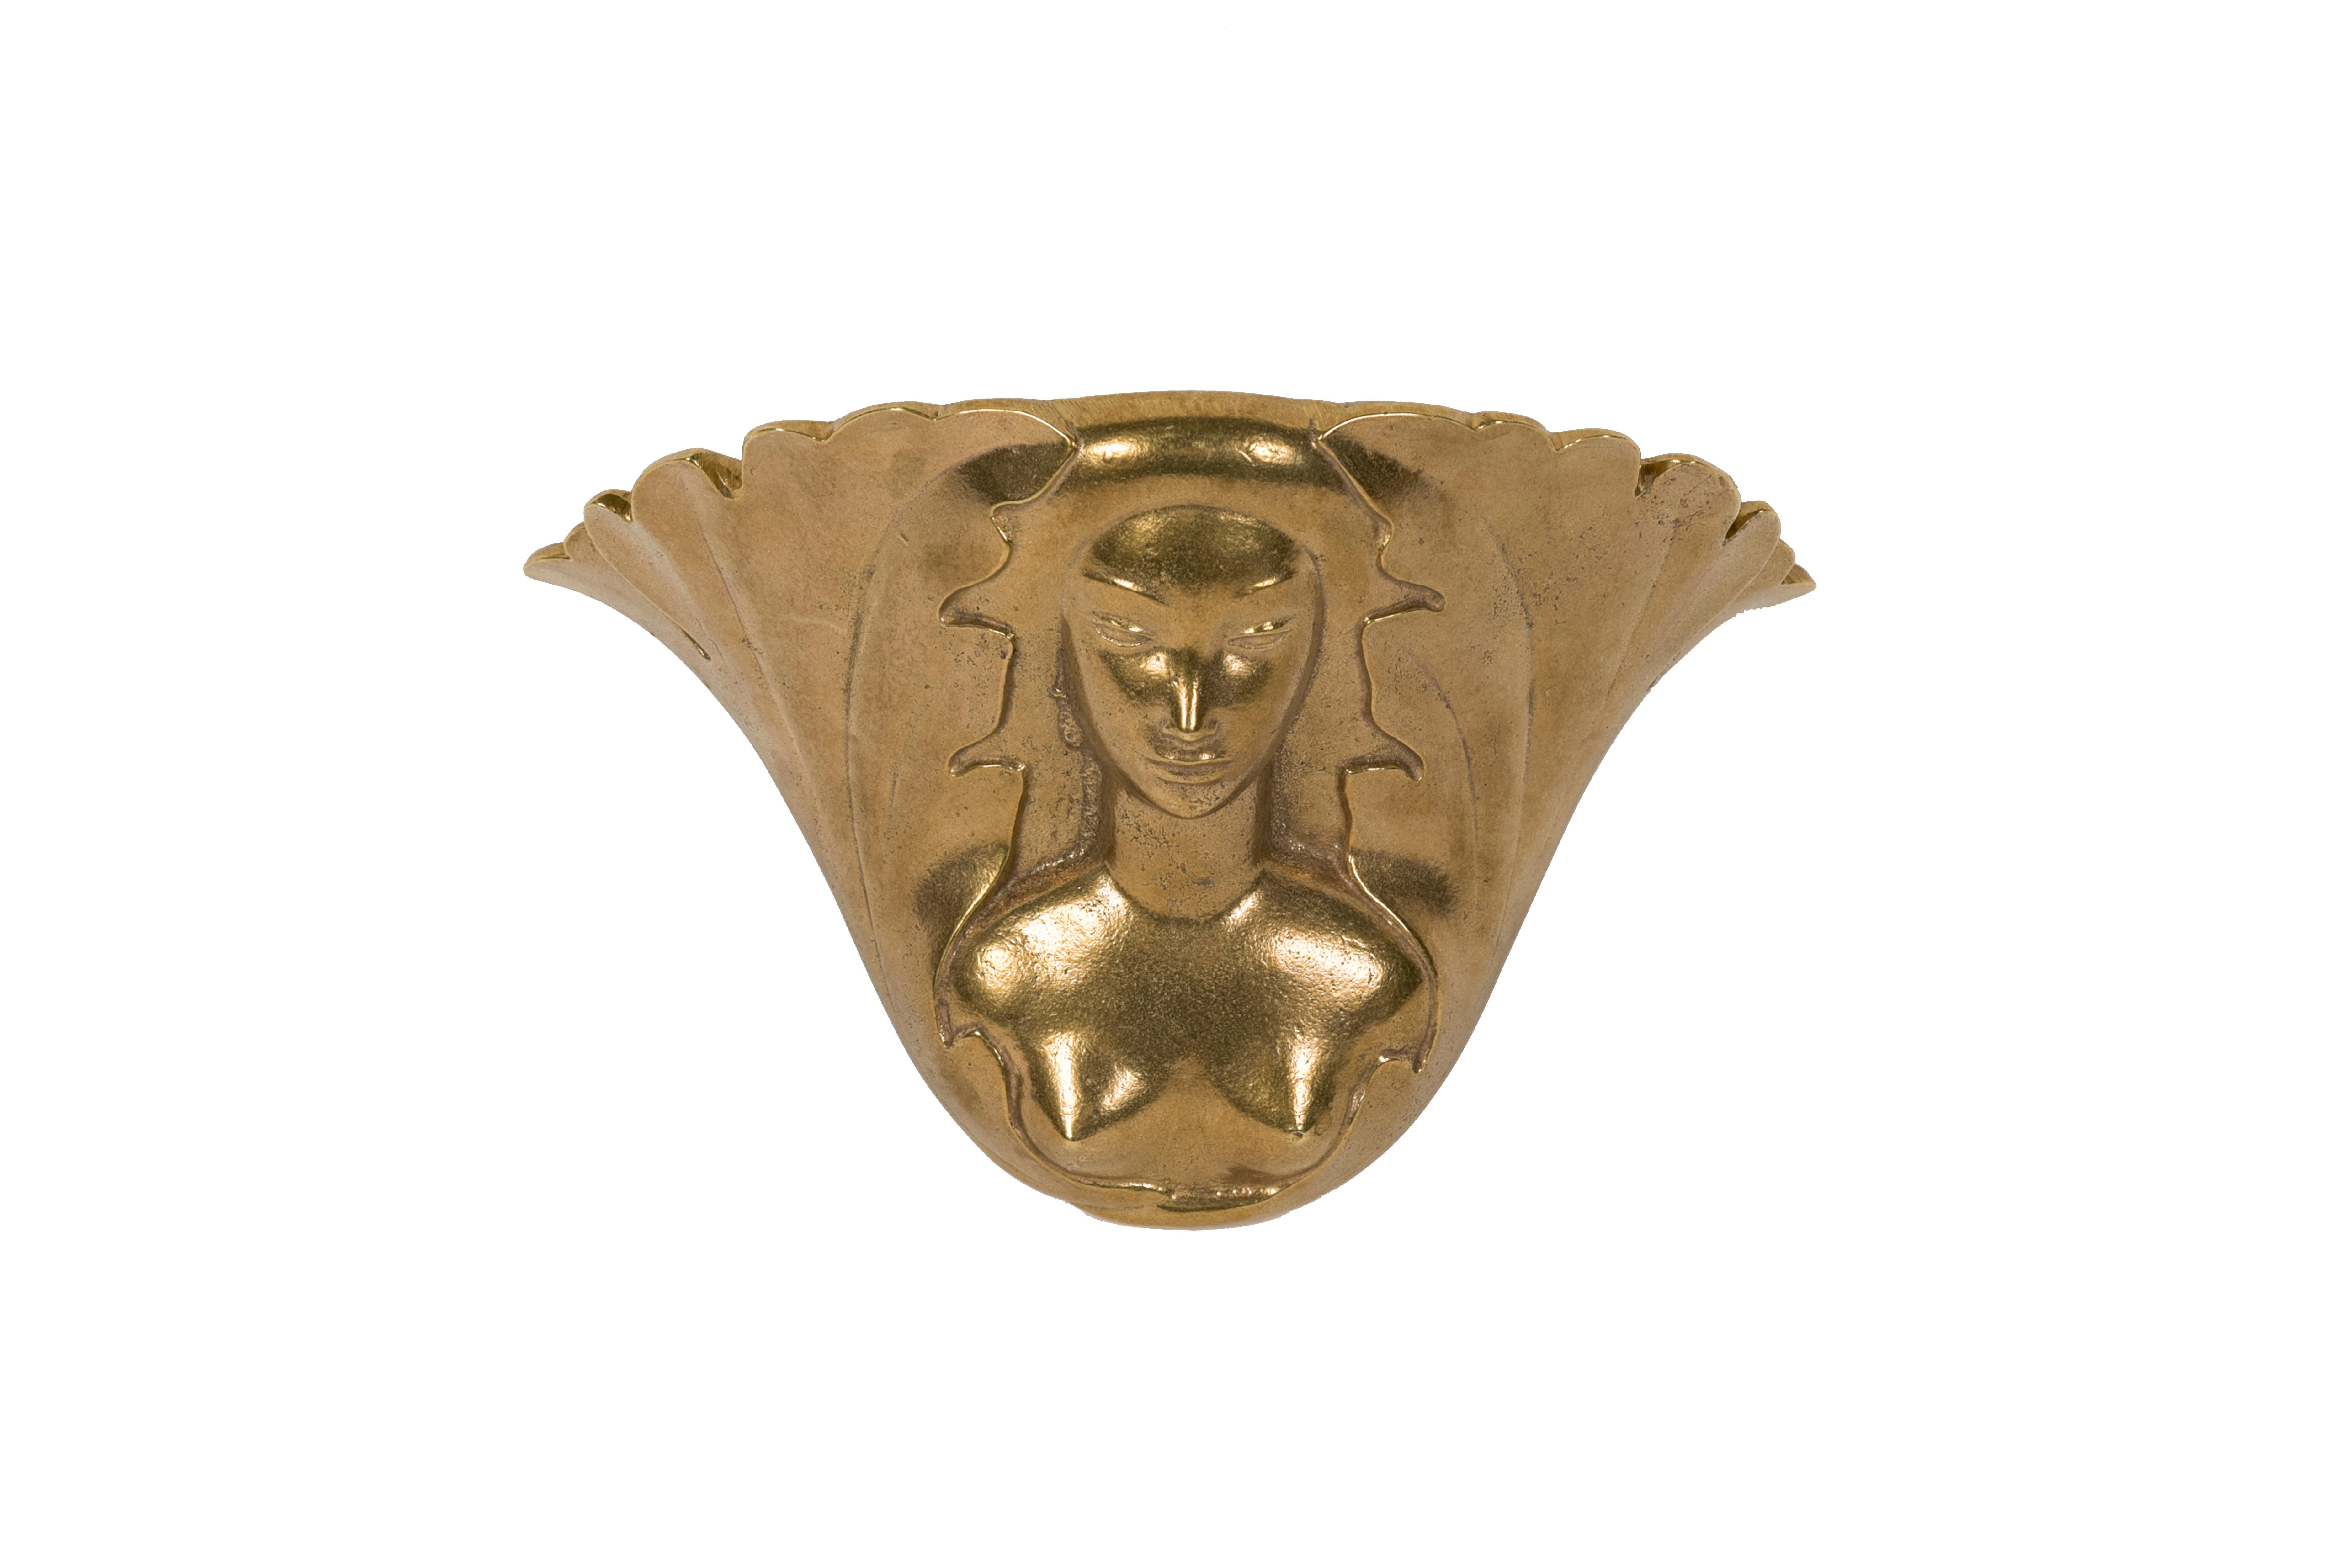 Rare paire d'appliques en bronze conçues par Riccardo Scarpa
Sculpteur français
1950's.